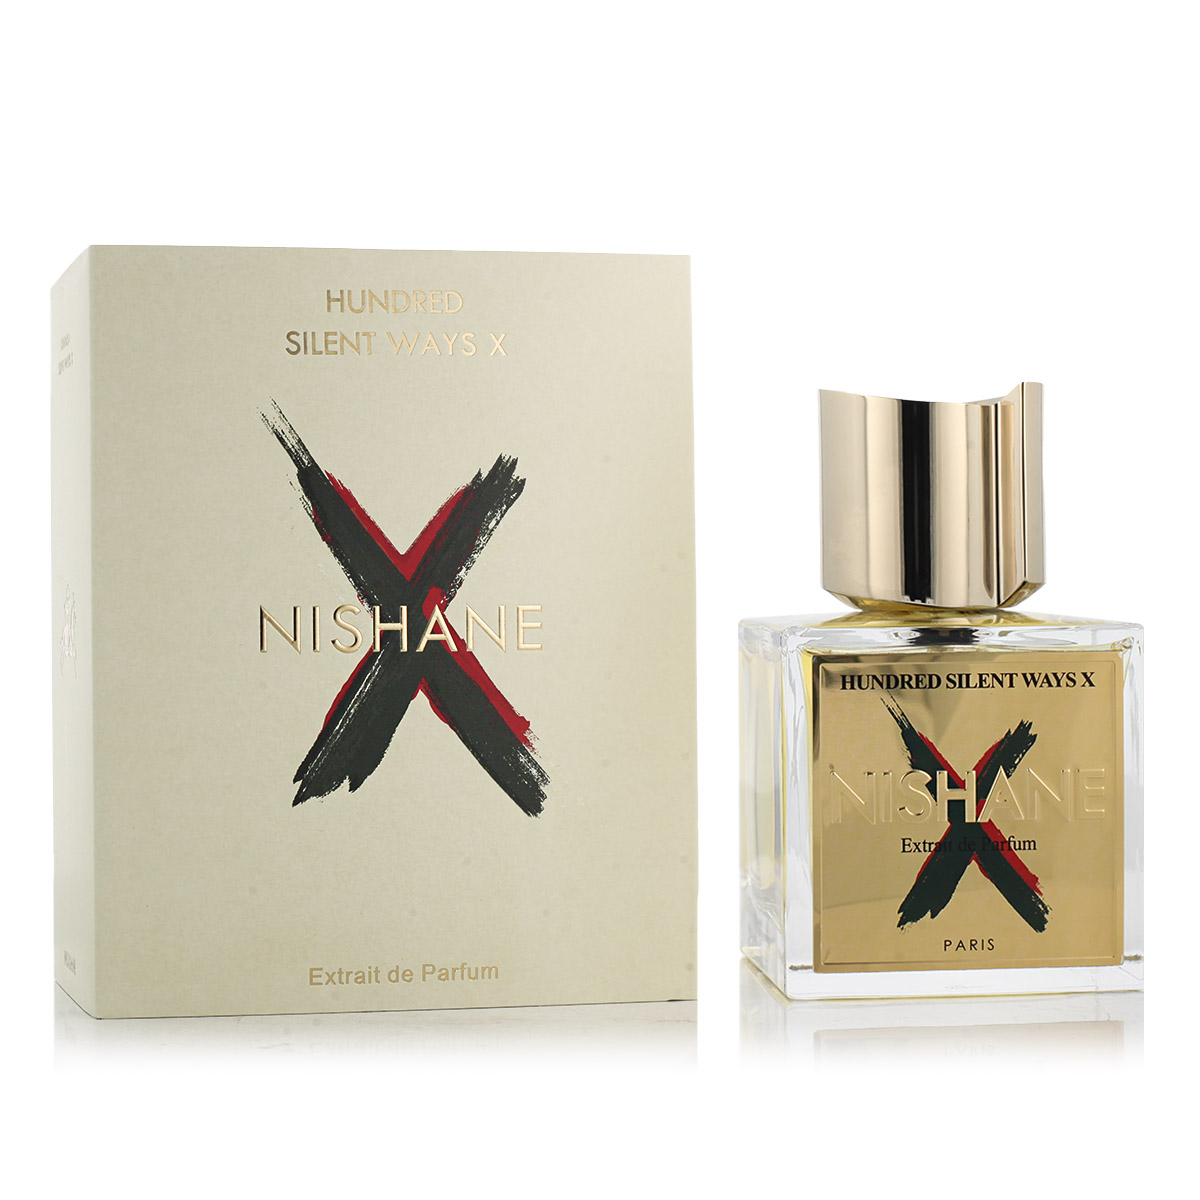 Nishane Hundred Silent Ways X 15 ml NIŠINIAI kvepalų mėginukas (atomaizeris) Unisex Parfum